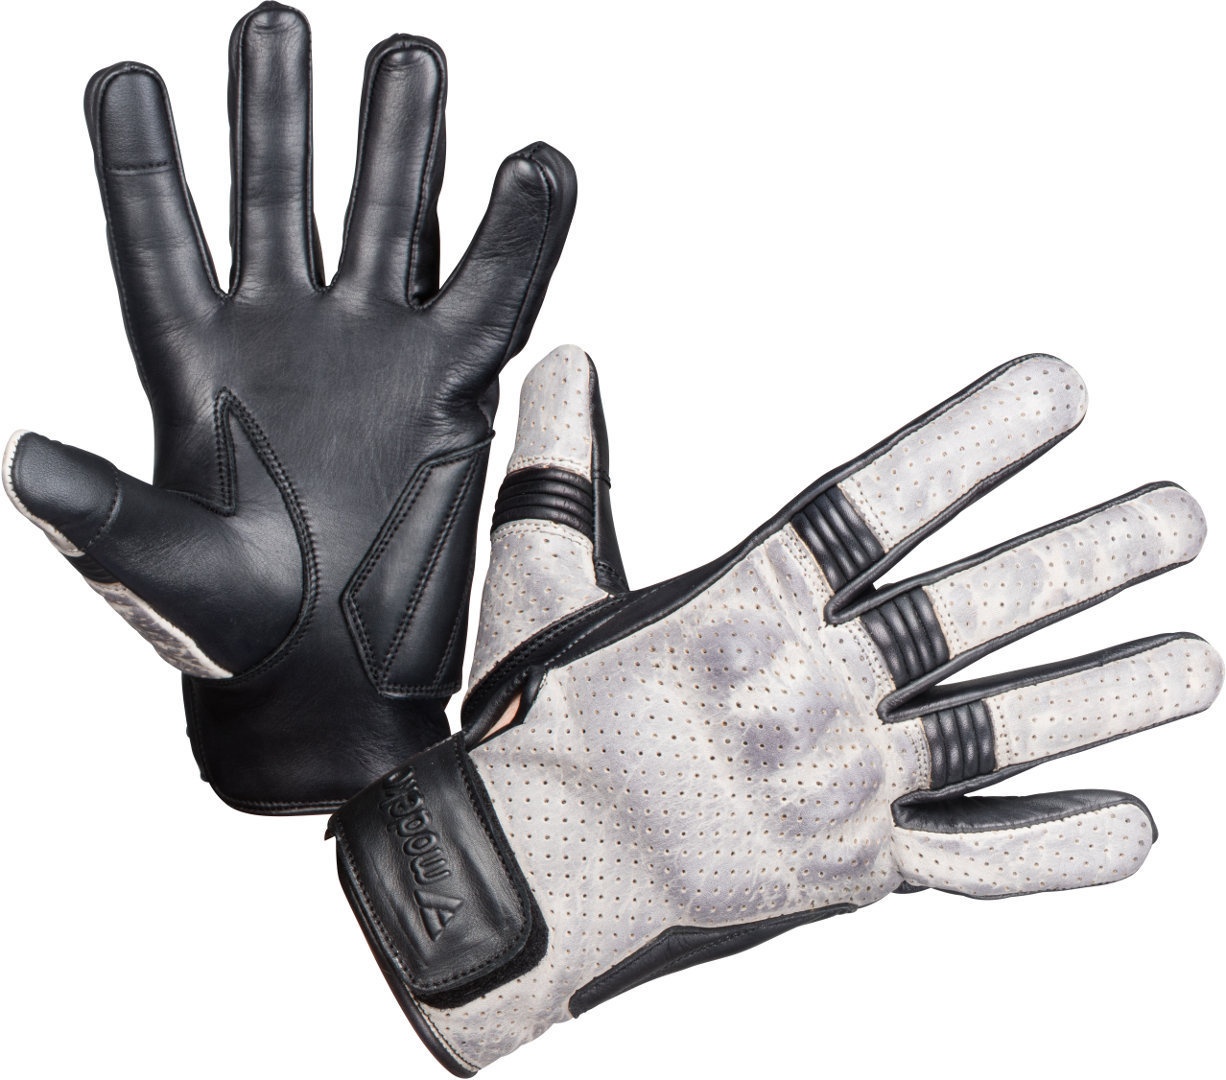 Modeka Hot Two De Handschoenen van de motorfiets, zwart-grijs, 4XL